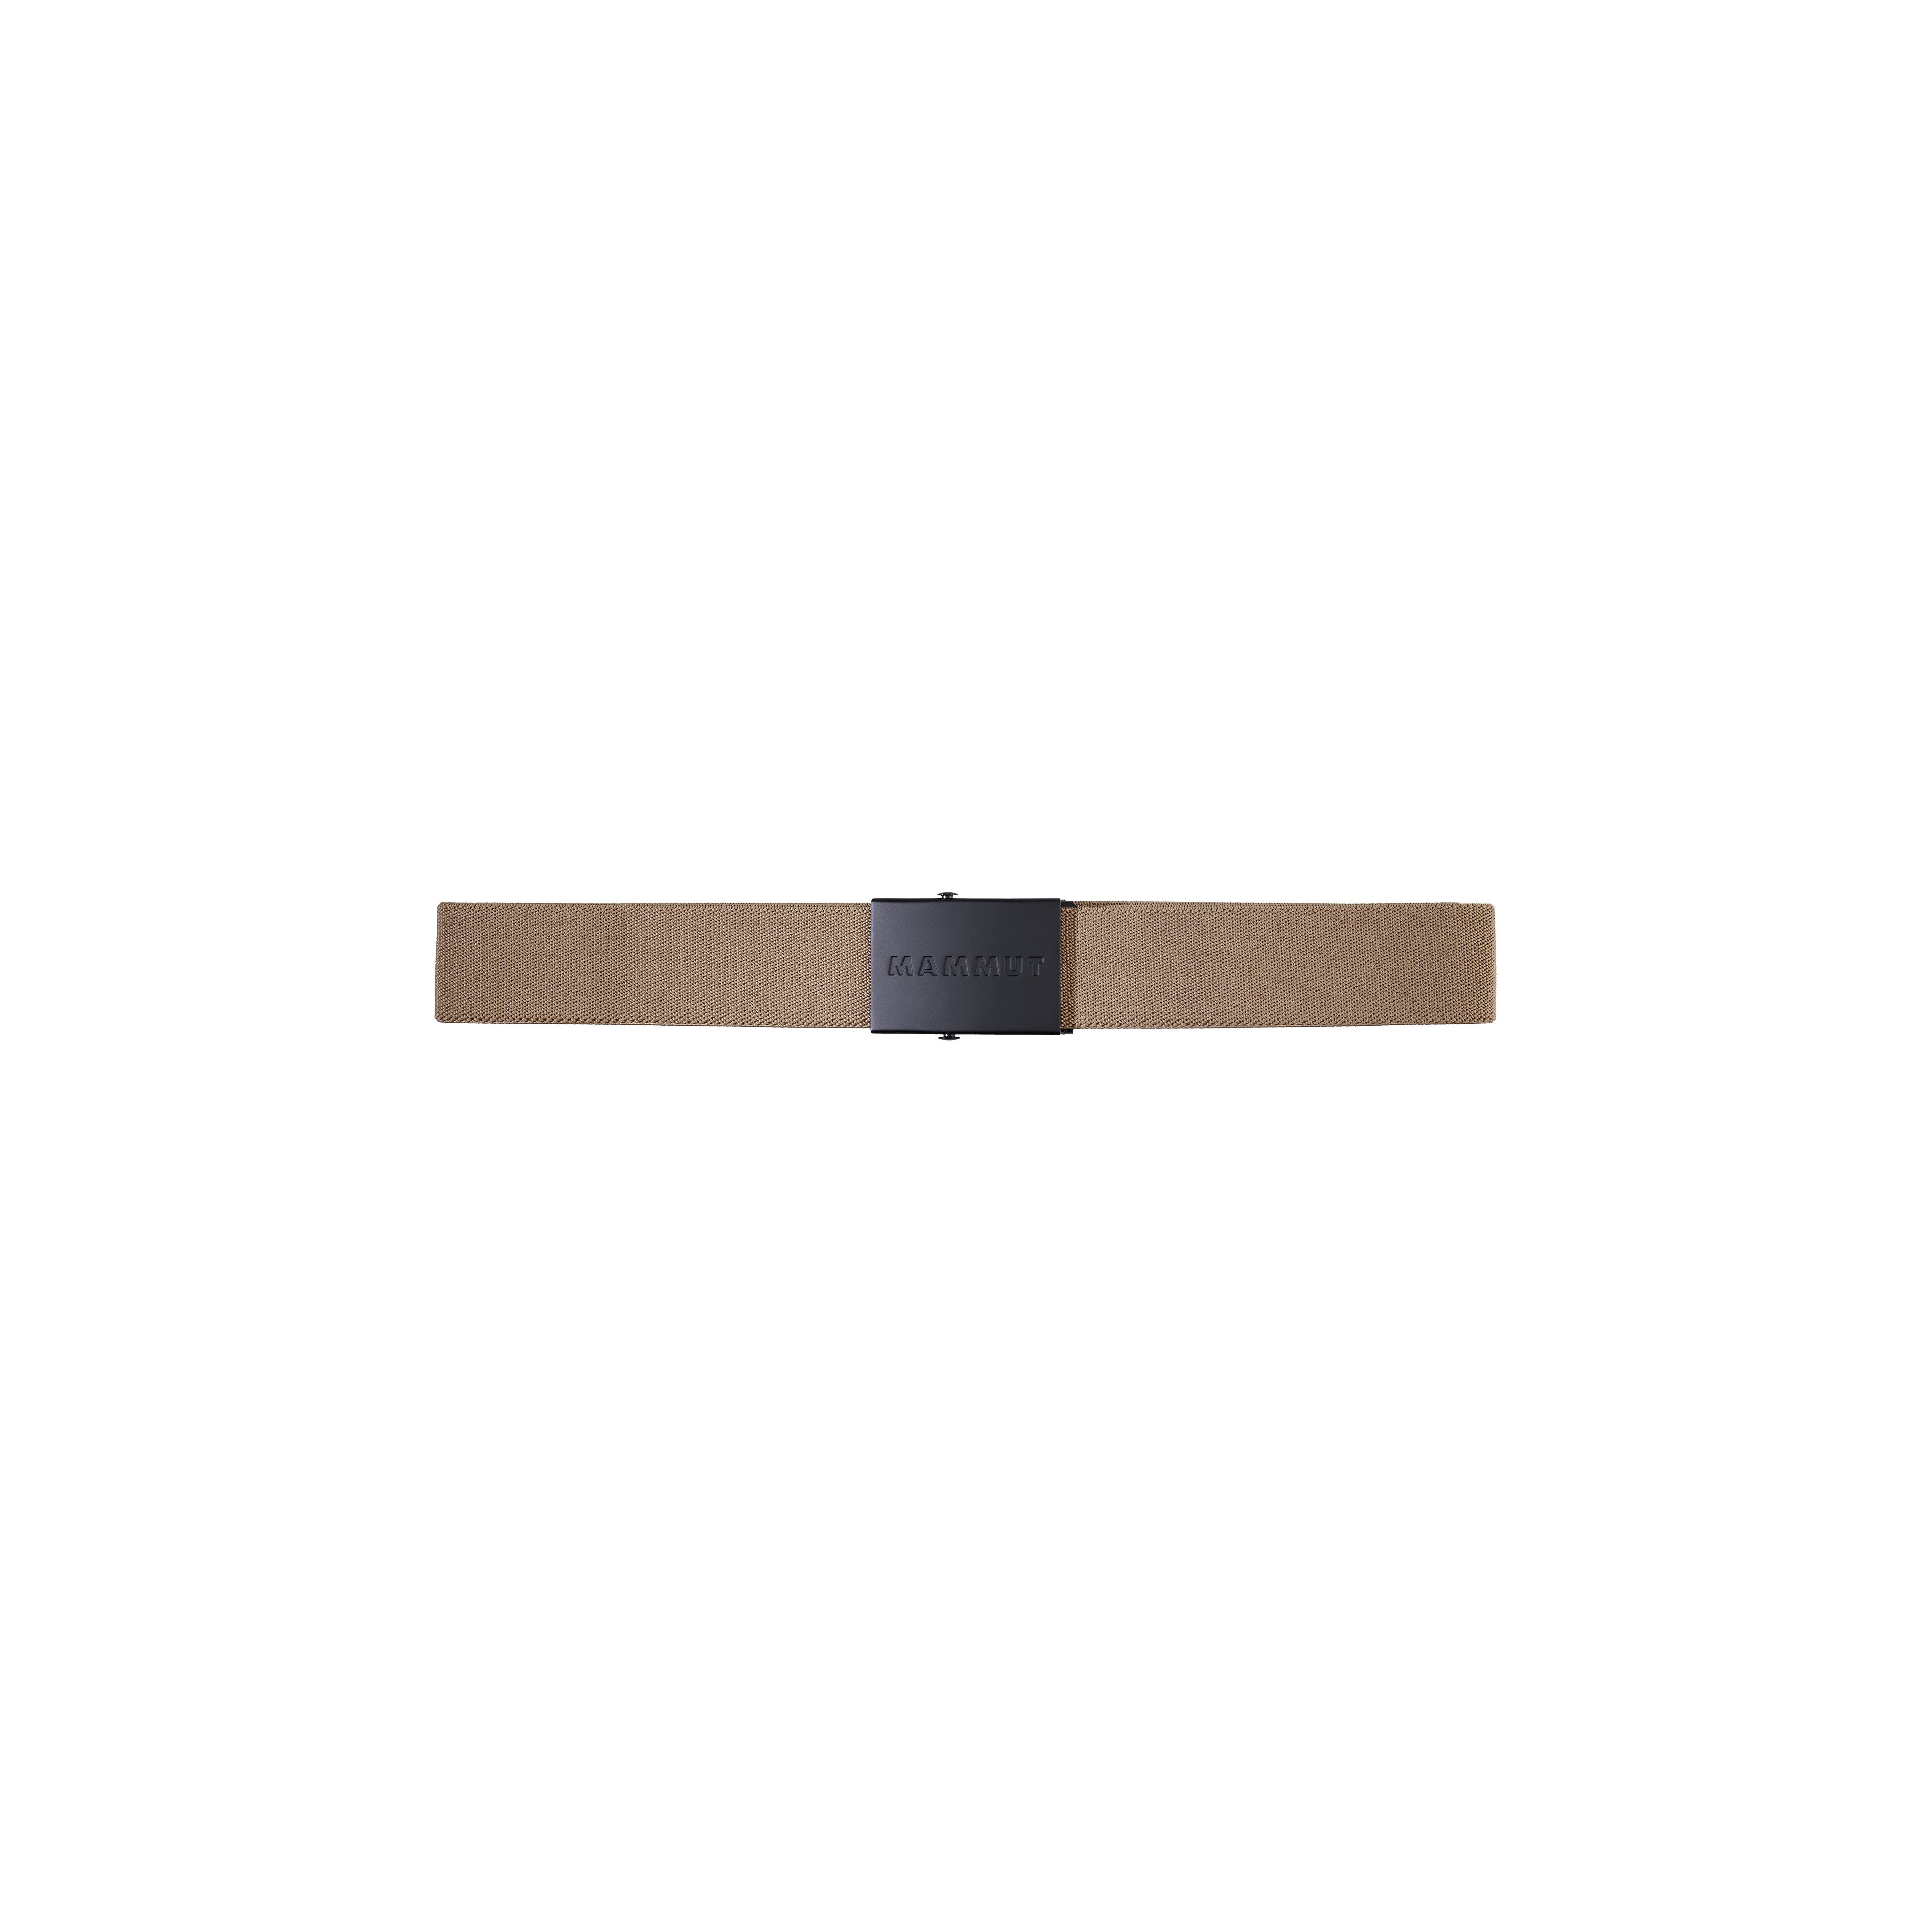 Mammut Logo Belt - dark sand, one size product image